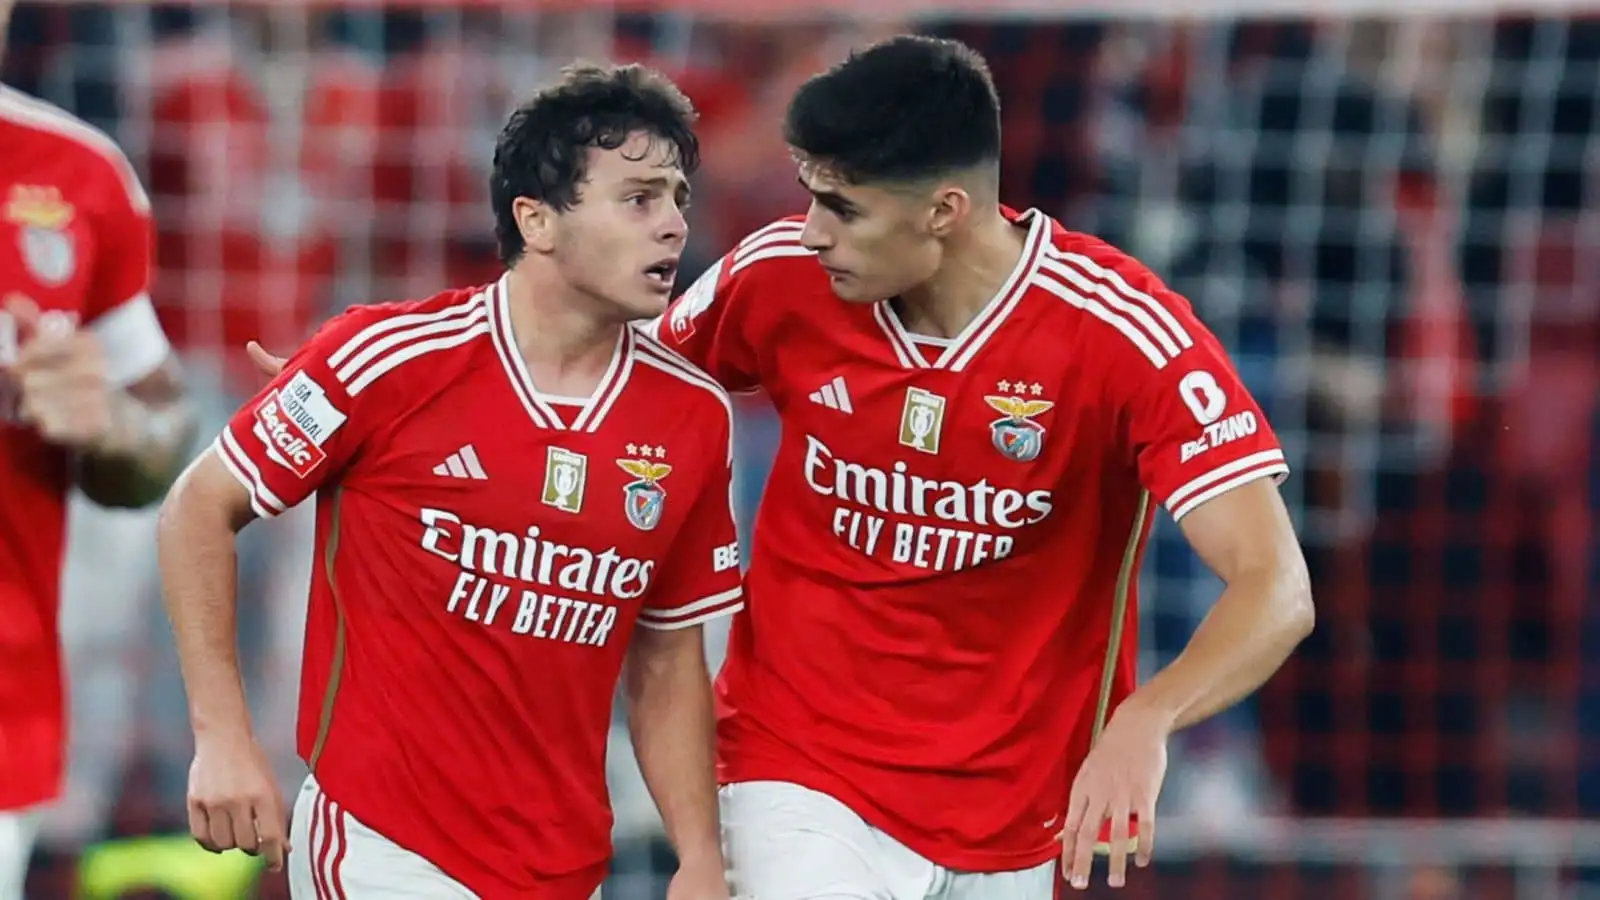 Joao Neves dan Antonio Silva: Masa Depan Panas di Manchester United - Benfica Transfer Drama